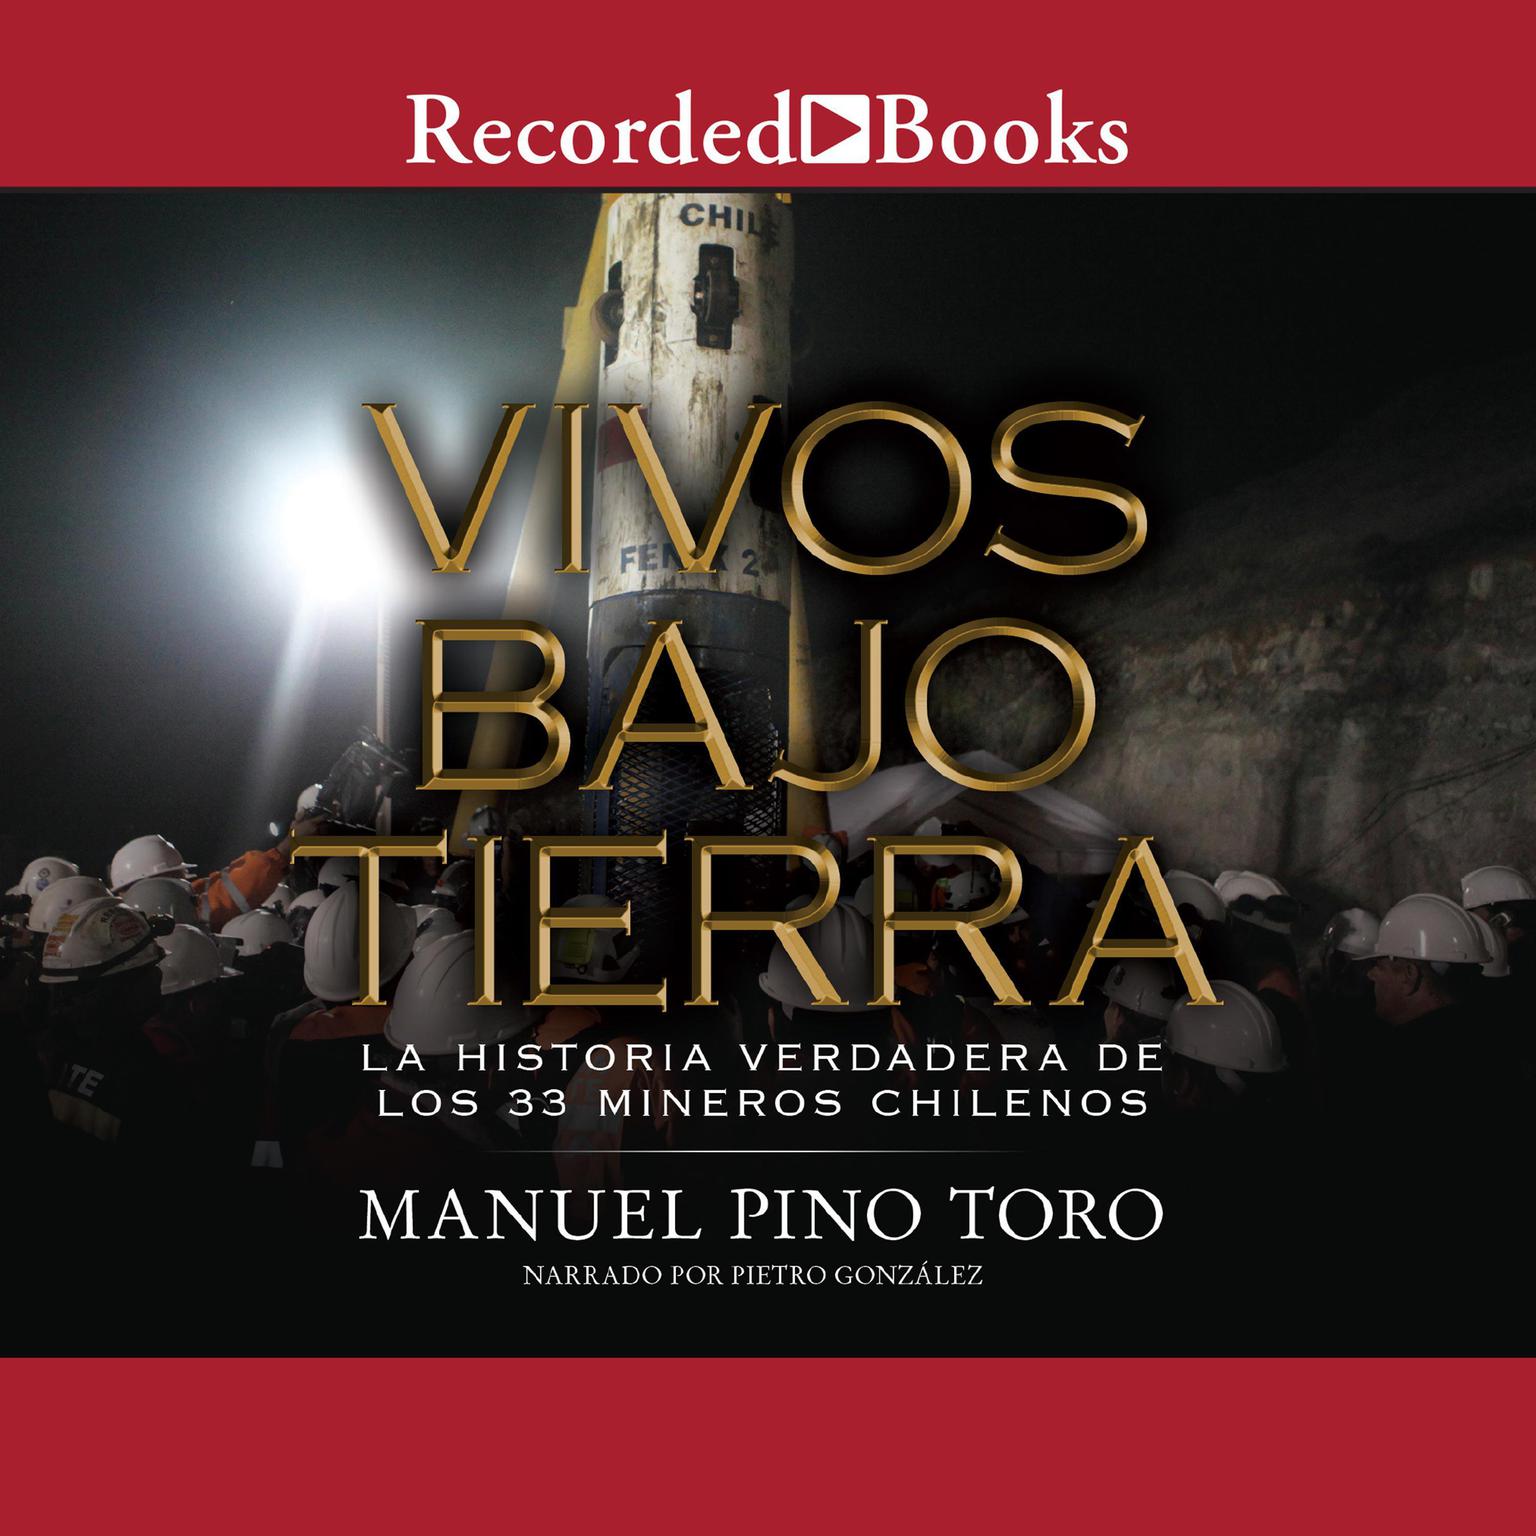 Vivos bajo tierra (Buried Alive): La historia verdadera de los 33 mineros chilenos (The True Story of the 33 Chile an Miners) Audiobook, by Manuel Pino Toro